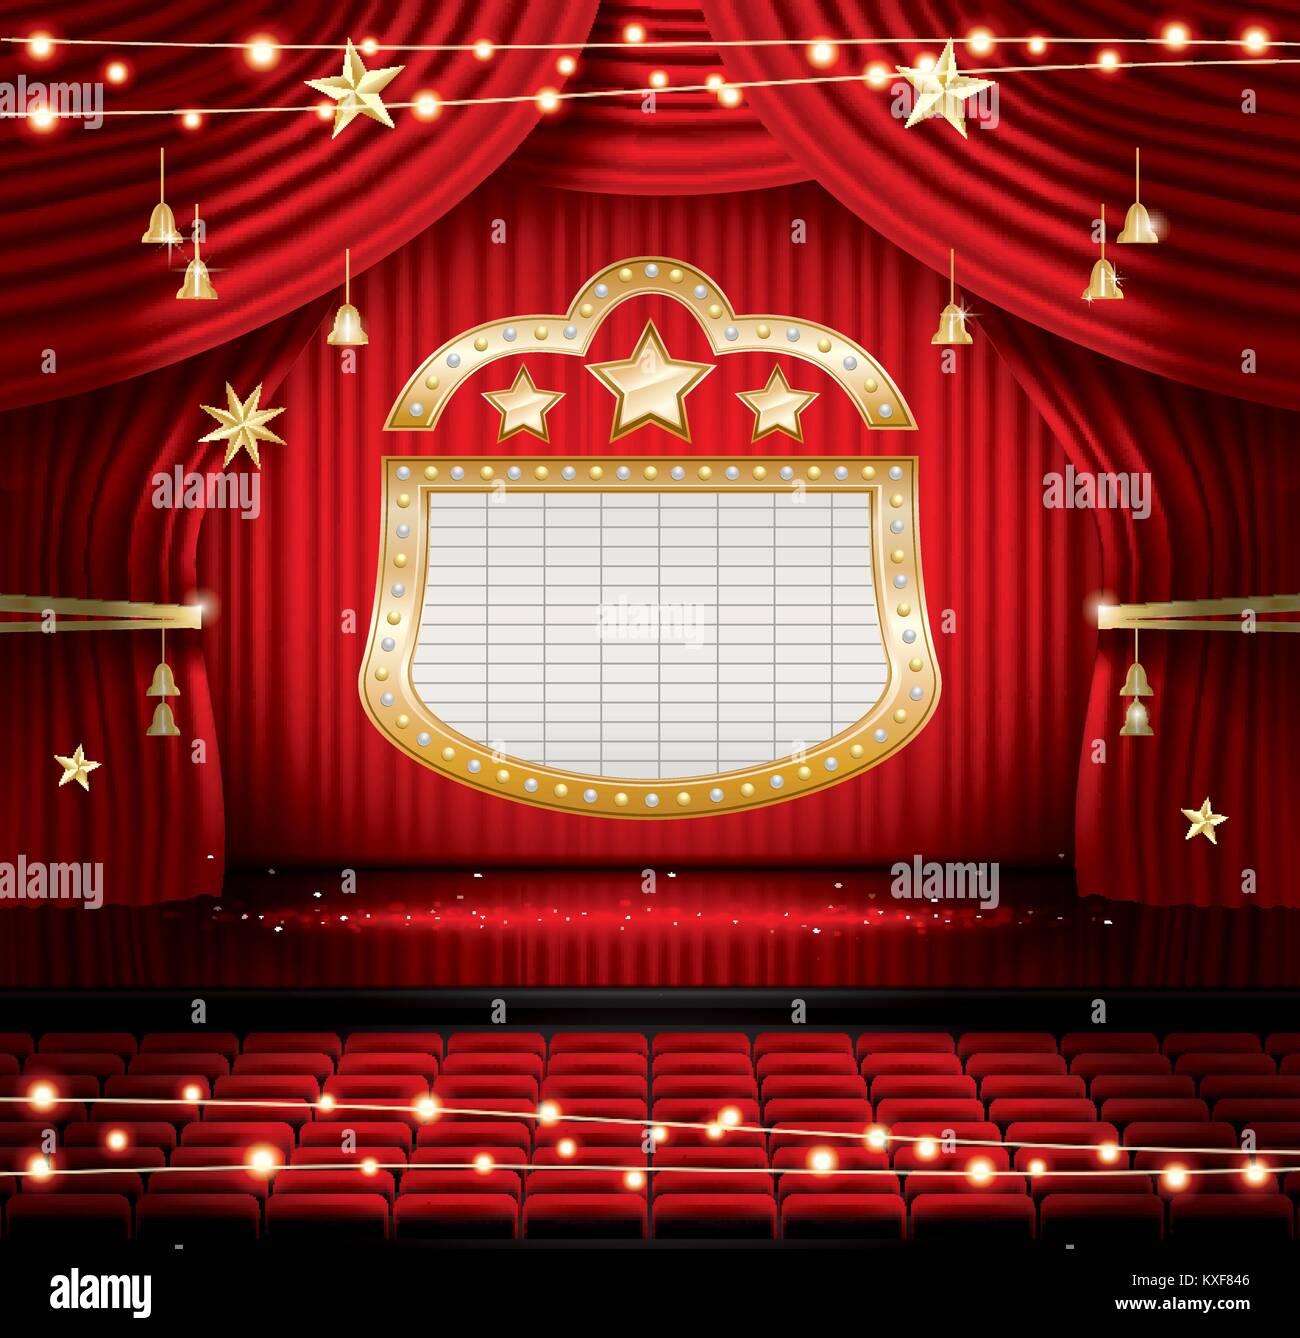 Roten Bühnenvorhang mit Sitzen und Strahler. Vector Illustration. Theater, Oper oder Kino Szene. Licht auf einer Etage. Stock Vektor